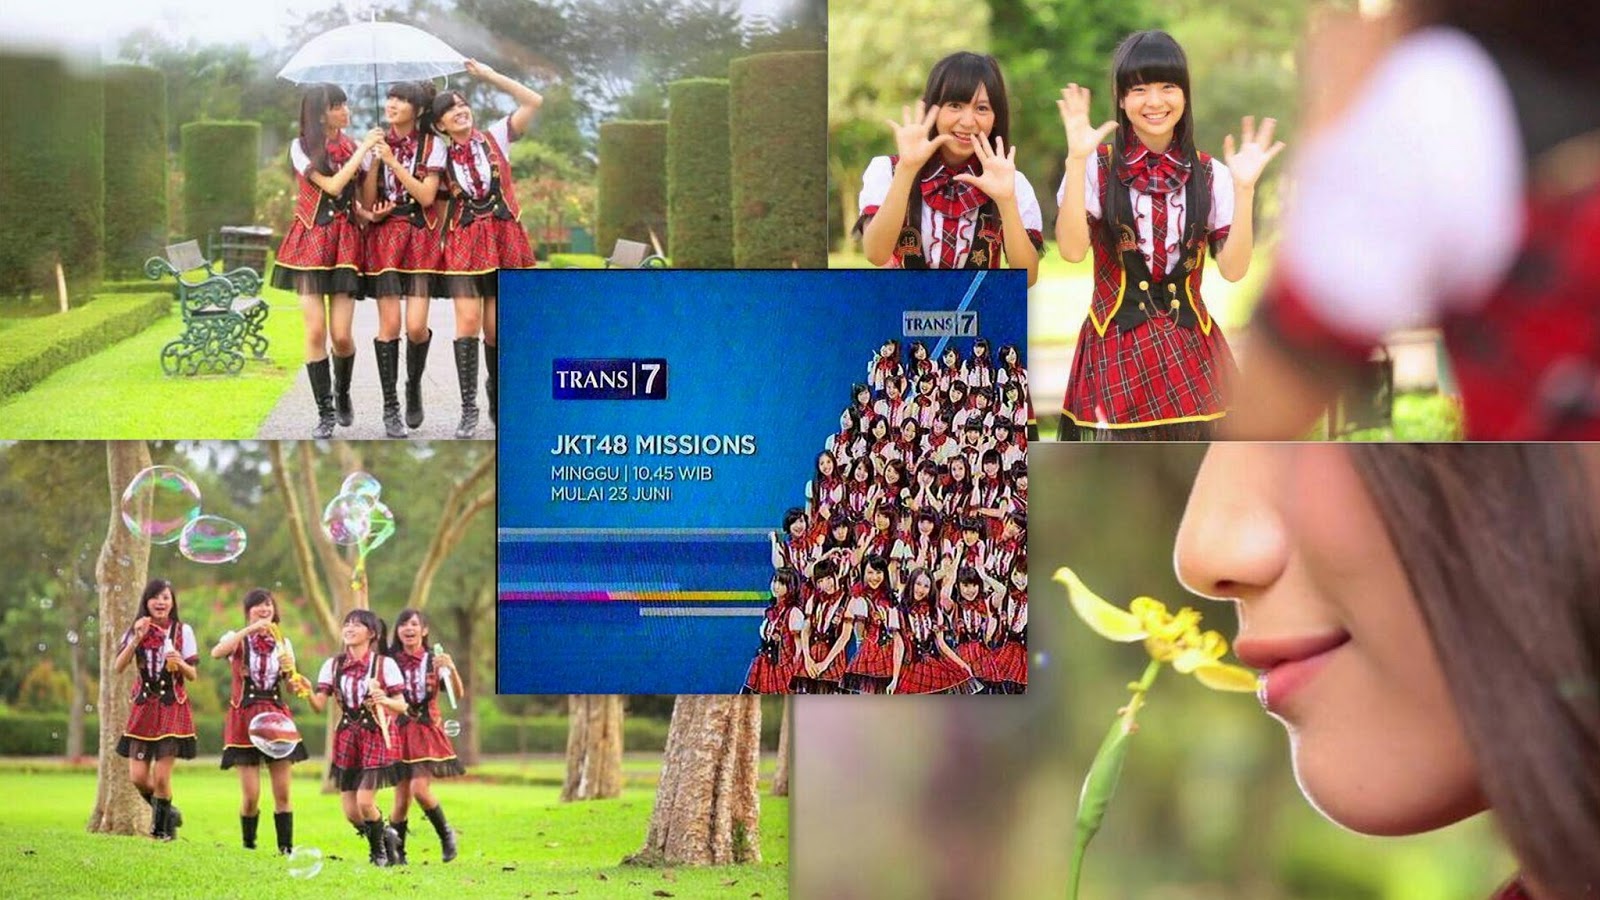 JKT48 Missions Trans 7 Episode 3